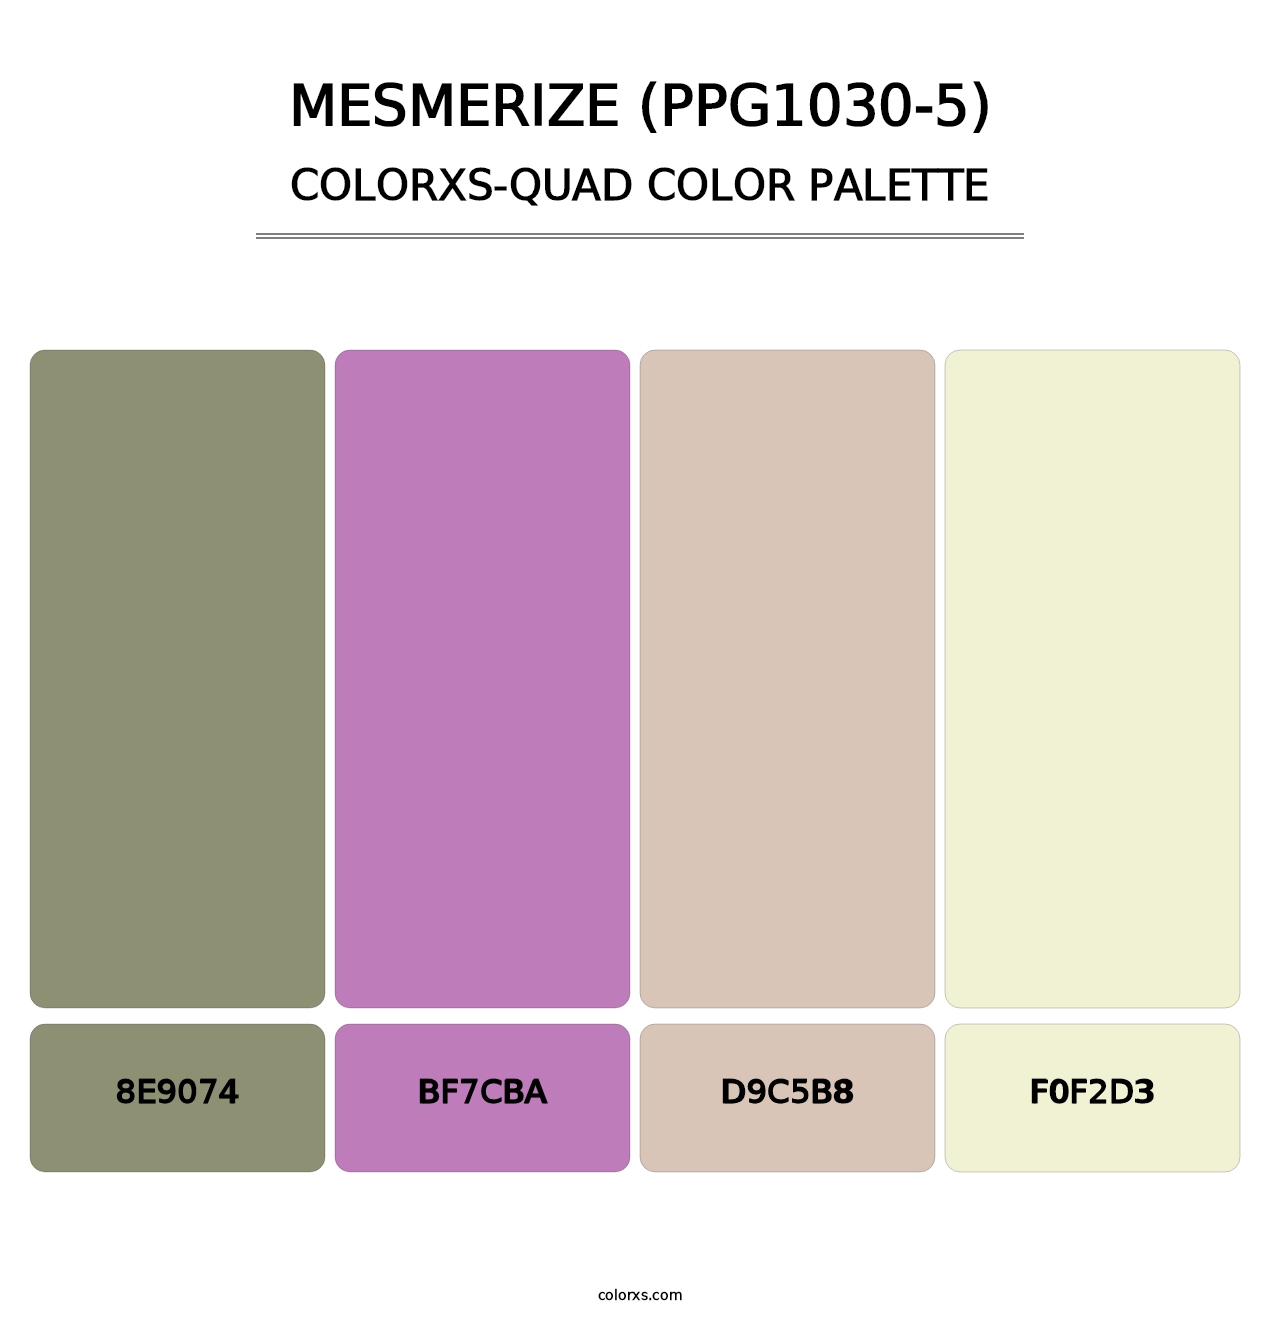 Mesmerize (PPG1030-5) - Colorxs Quad Palette